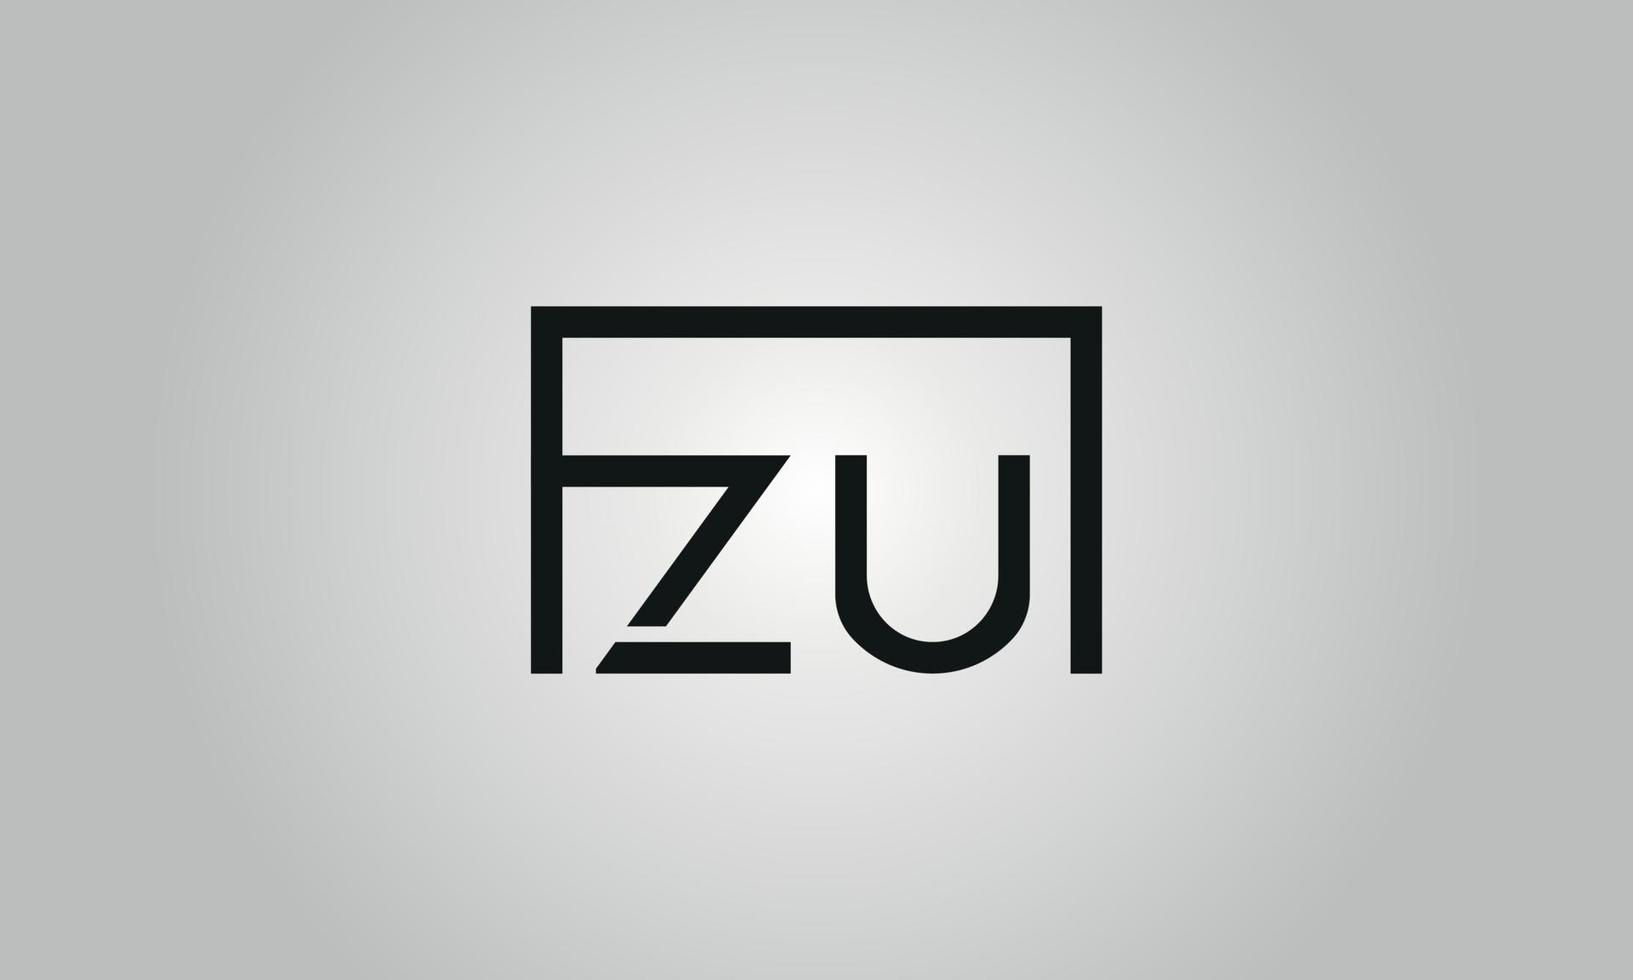 création de logo lettre zu. logo zu avec forme carrée dans le modèle vectoriel gratuit de couleurs noires.